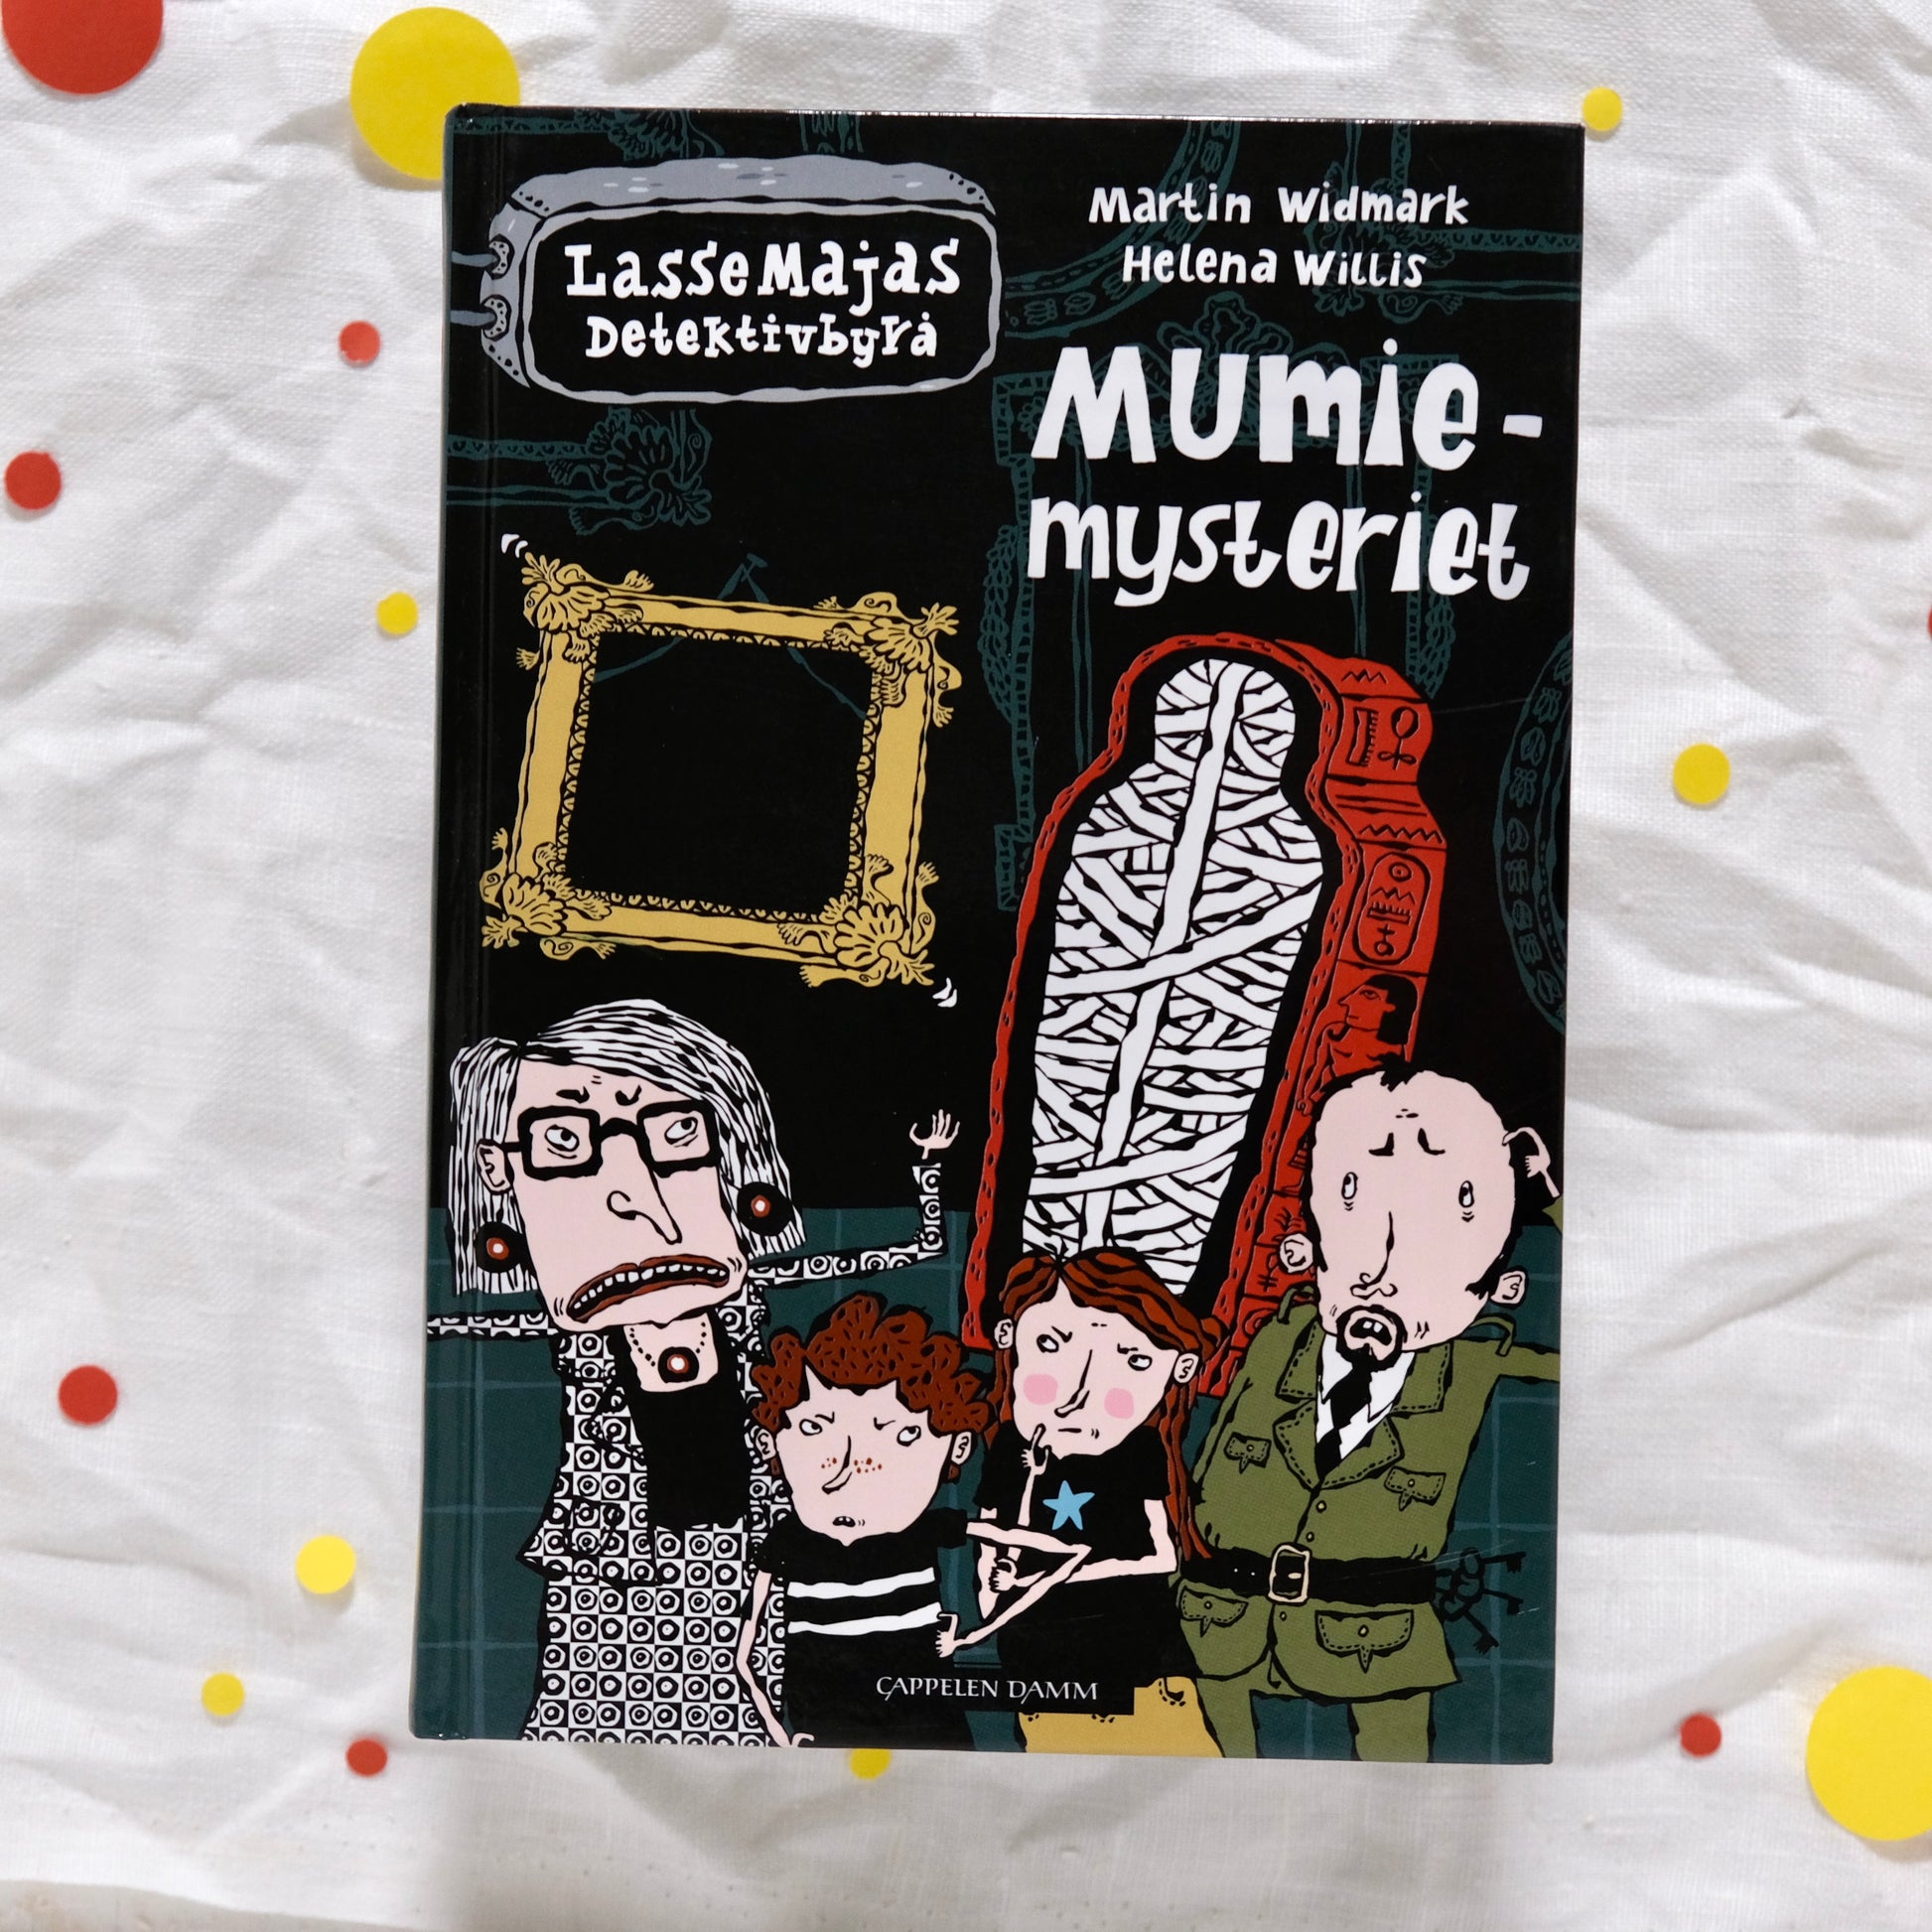 Mumiemysteriet (LasseMajas detektivbyrå, #5) av Martin Widmark og Helena Willis